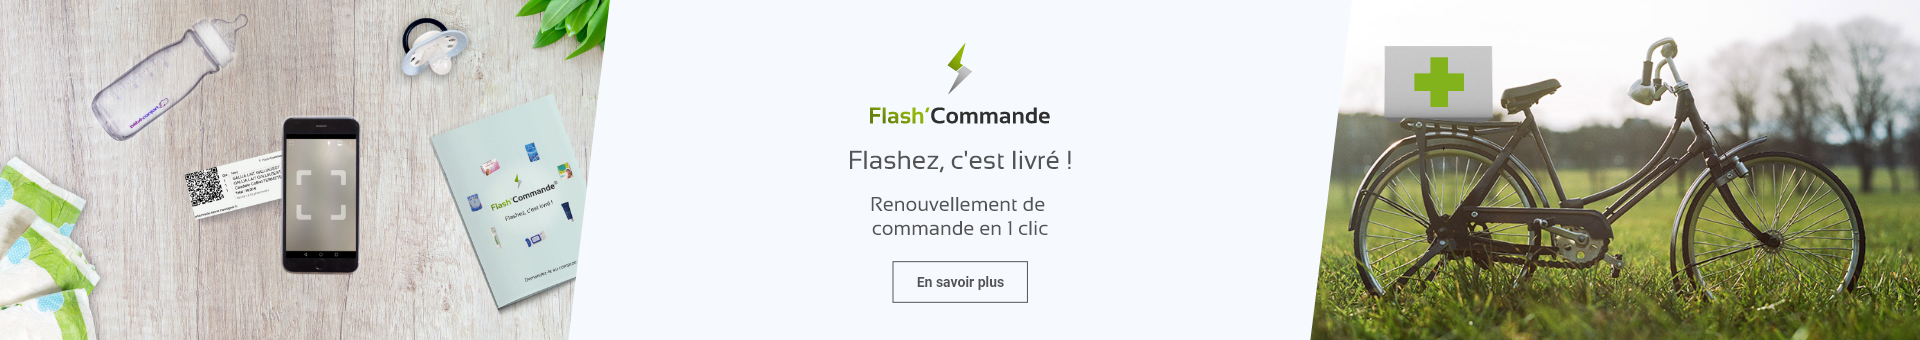 Smartphone et informations sur Flash'Commande l'outil pour se faire livrer son renouvellement